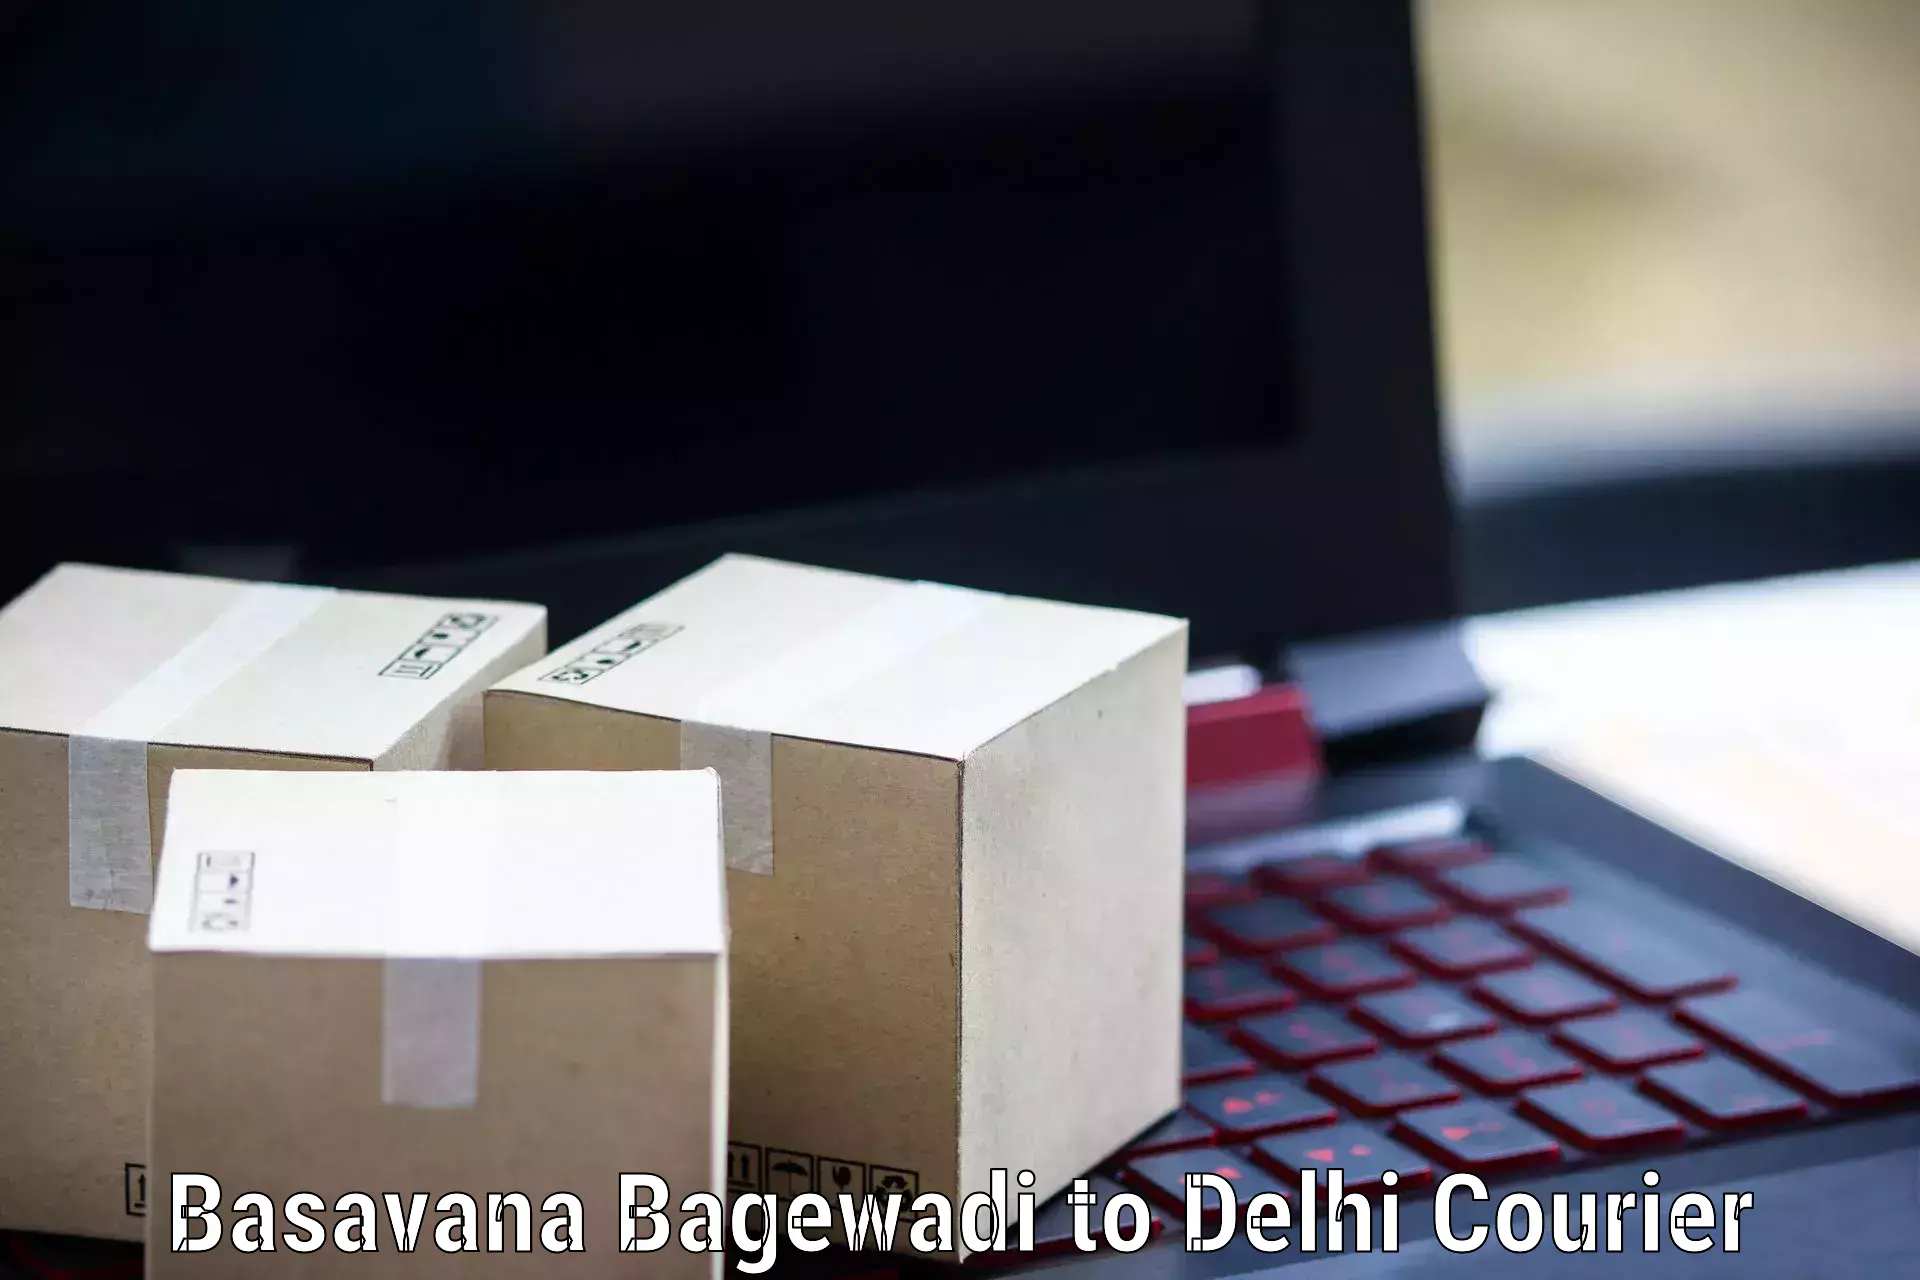 Efficient freight service Basavana Bagewadi to Delhi